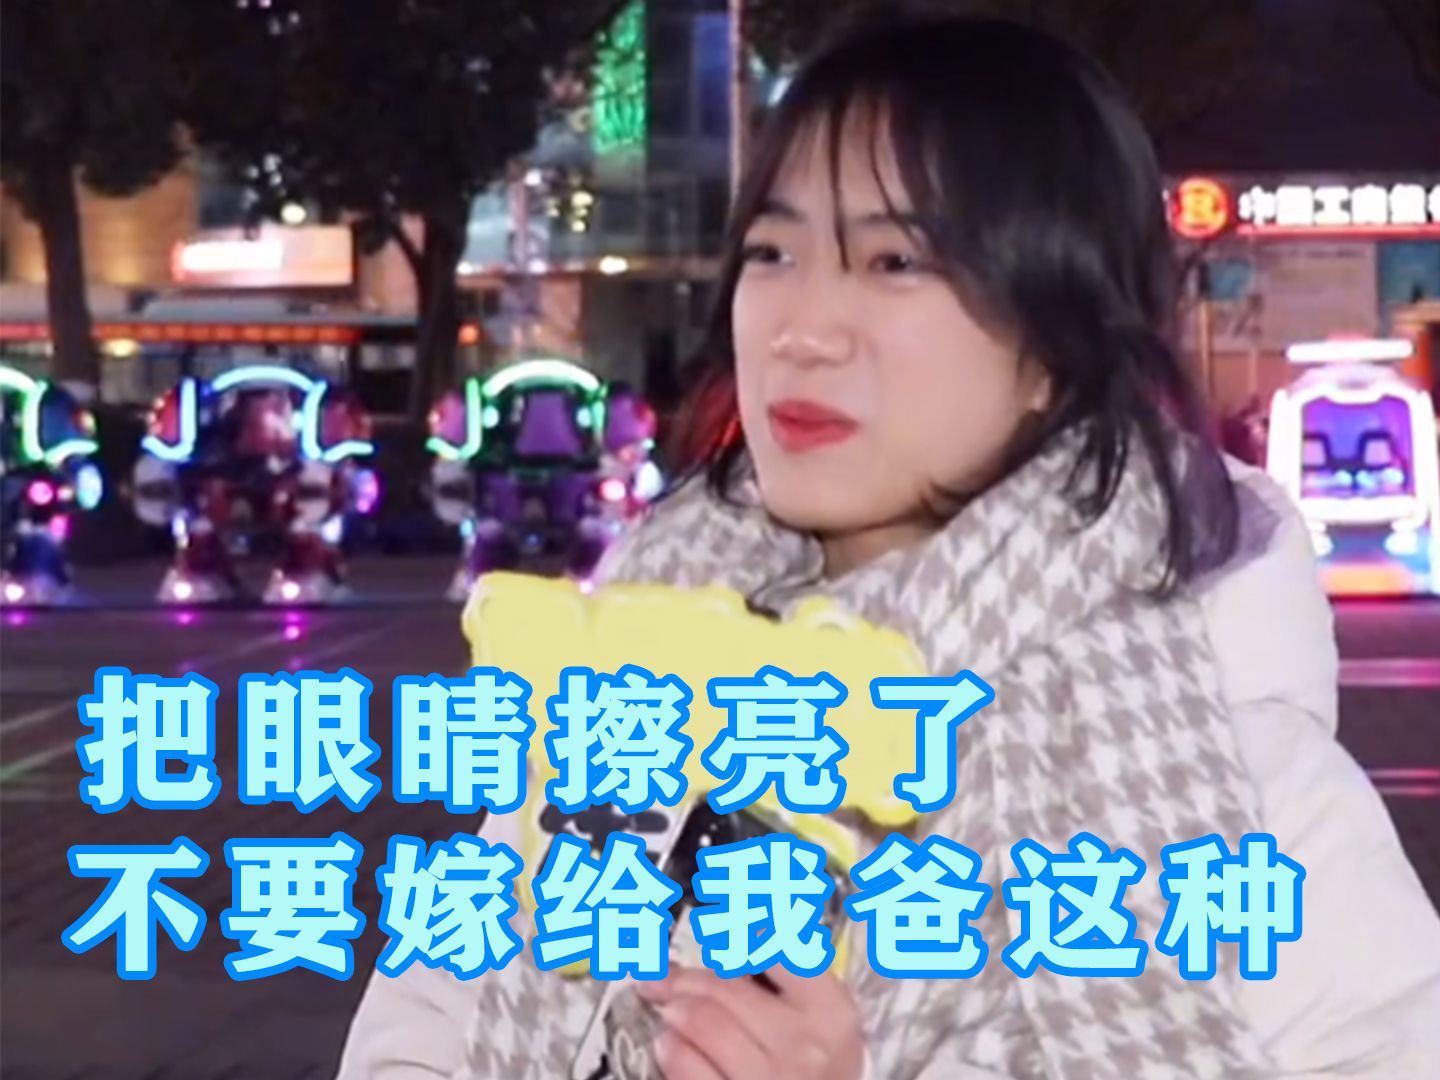 全网热议的“不要嫁给我爸”事件，让我看到了无数中国女性的悲